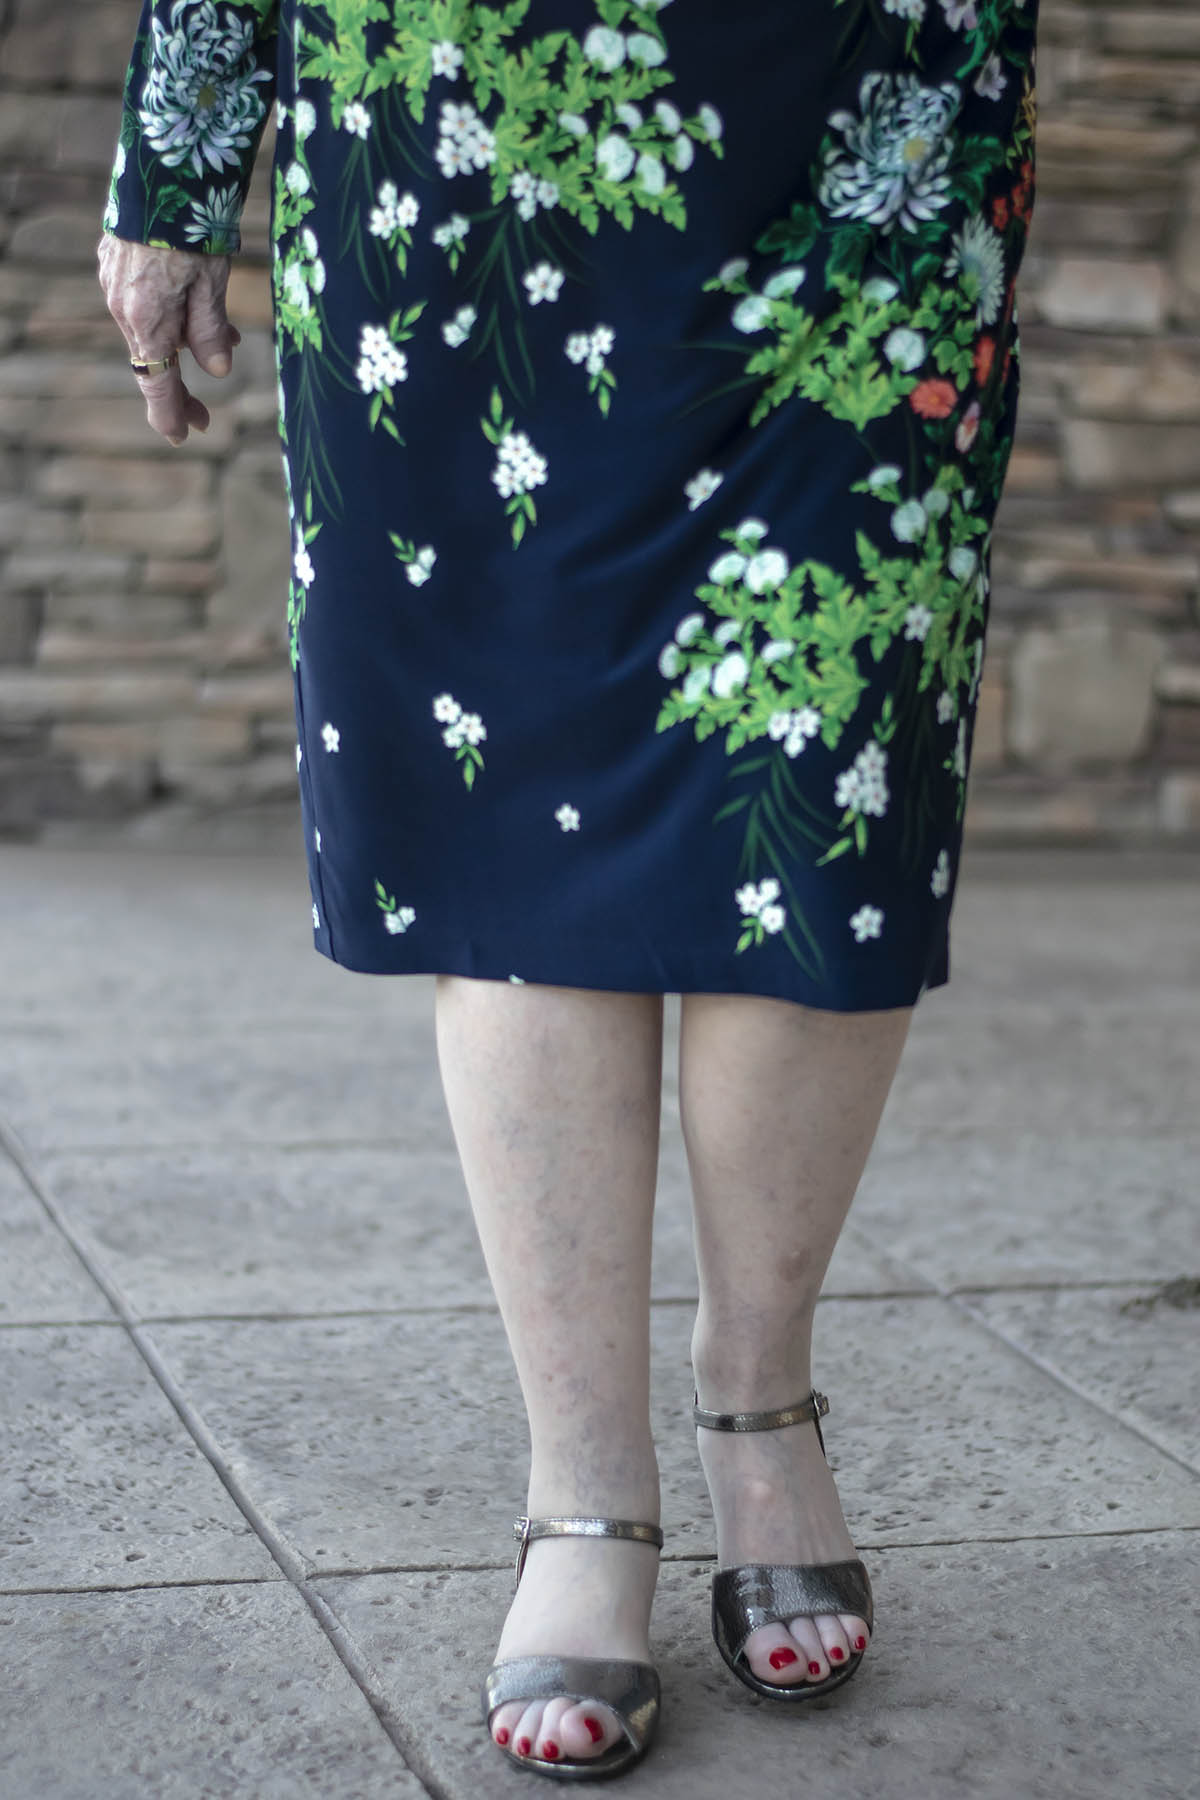 Finding heels for older women